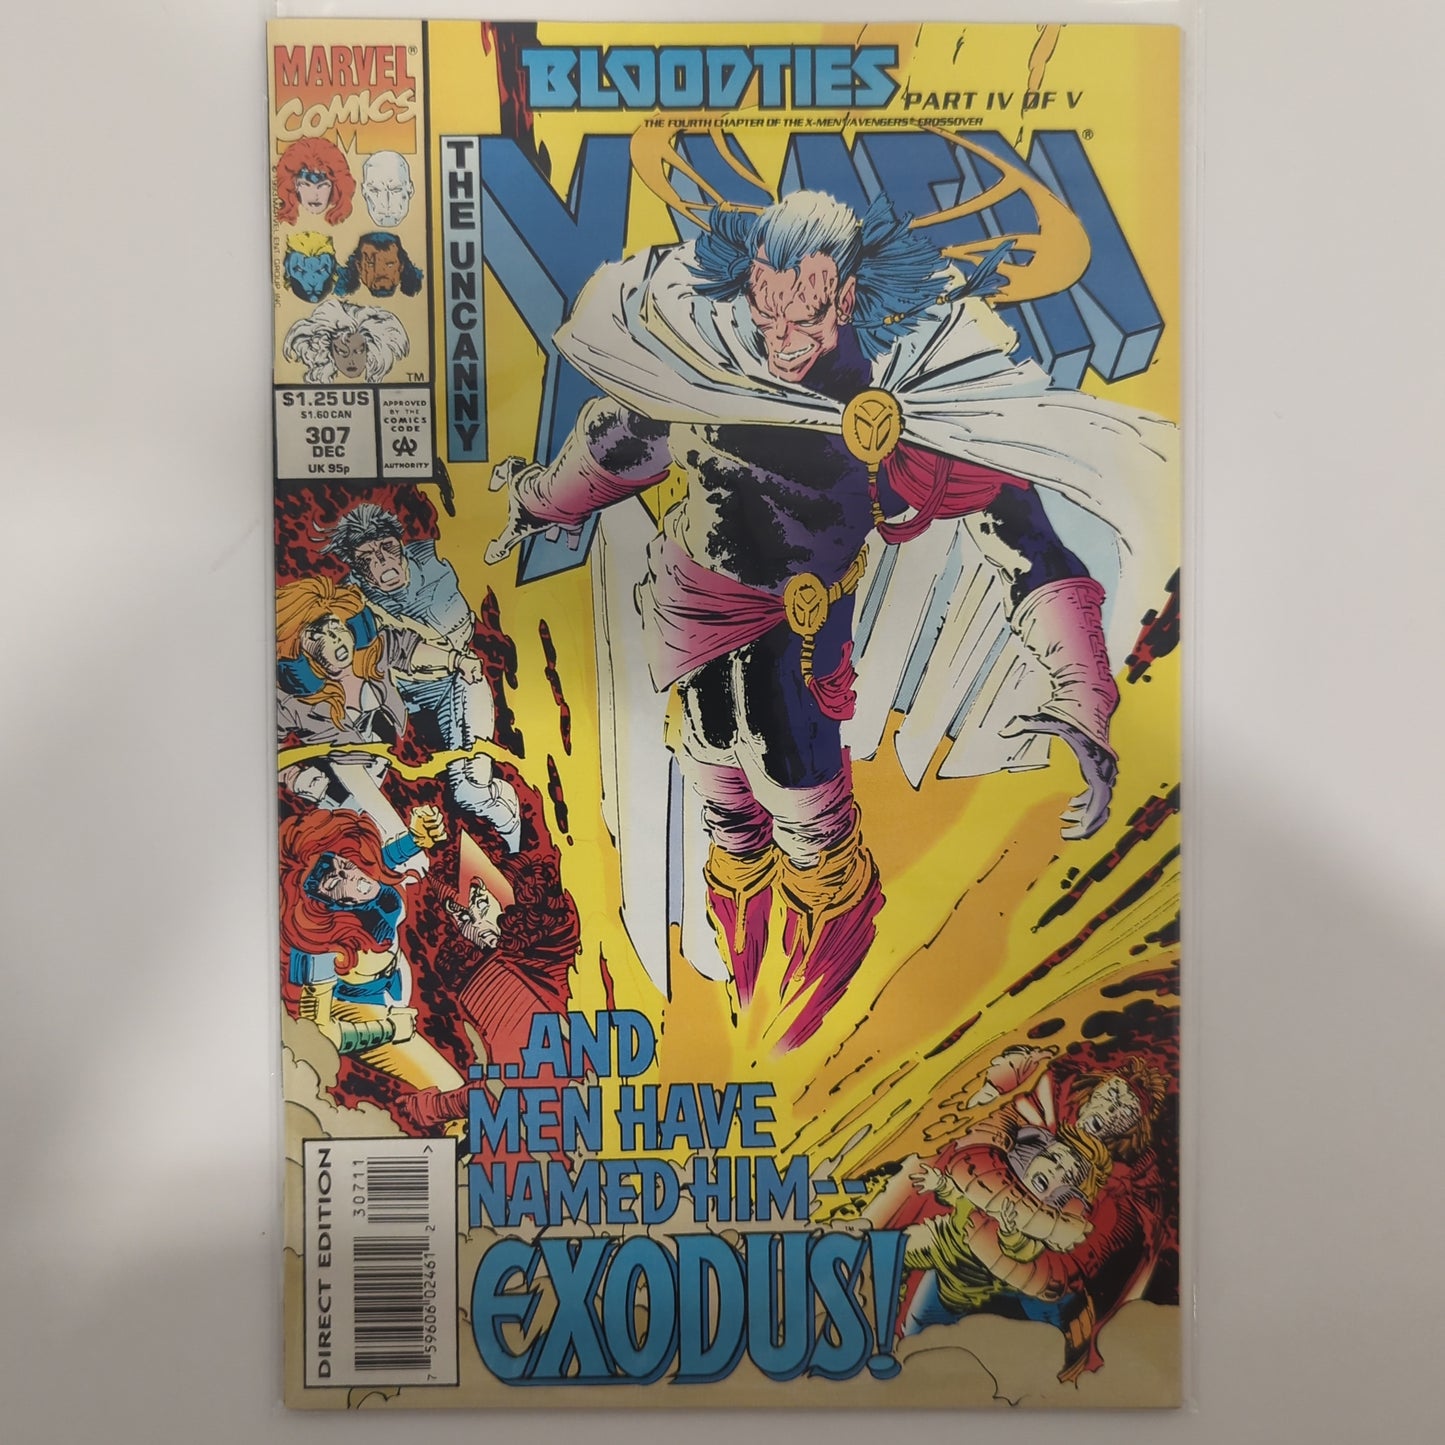 The Uncanny X-Men #307